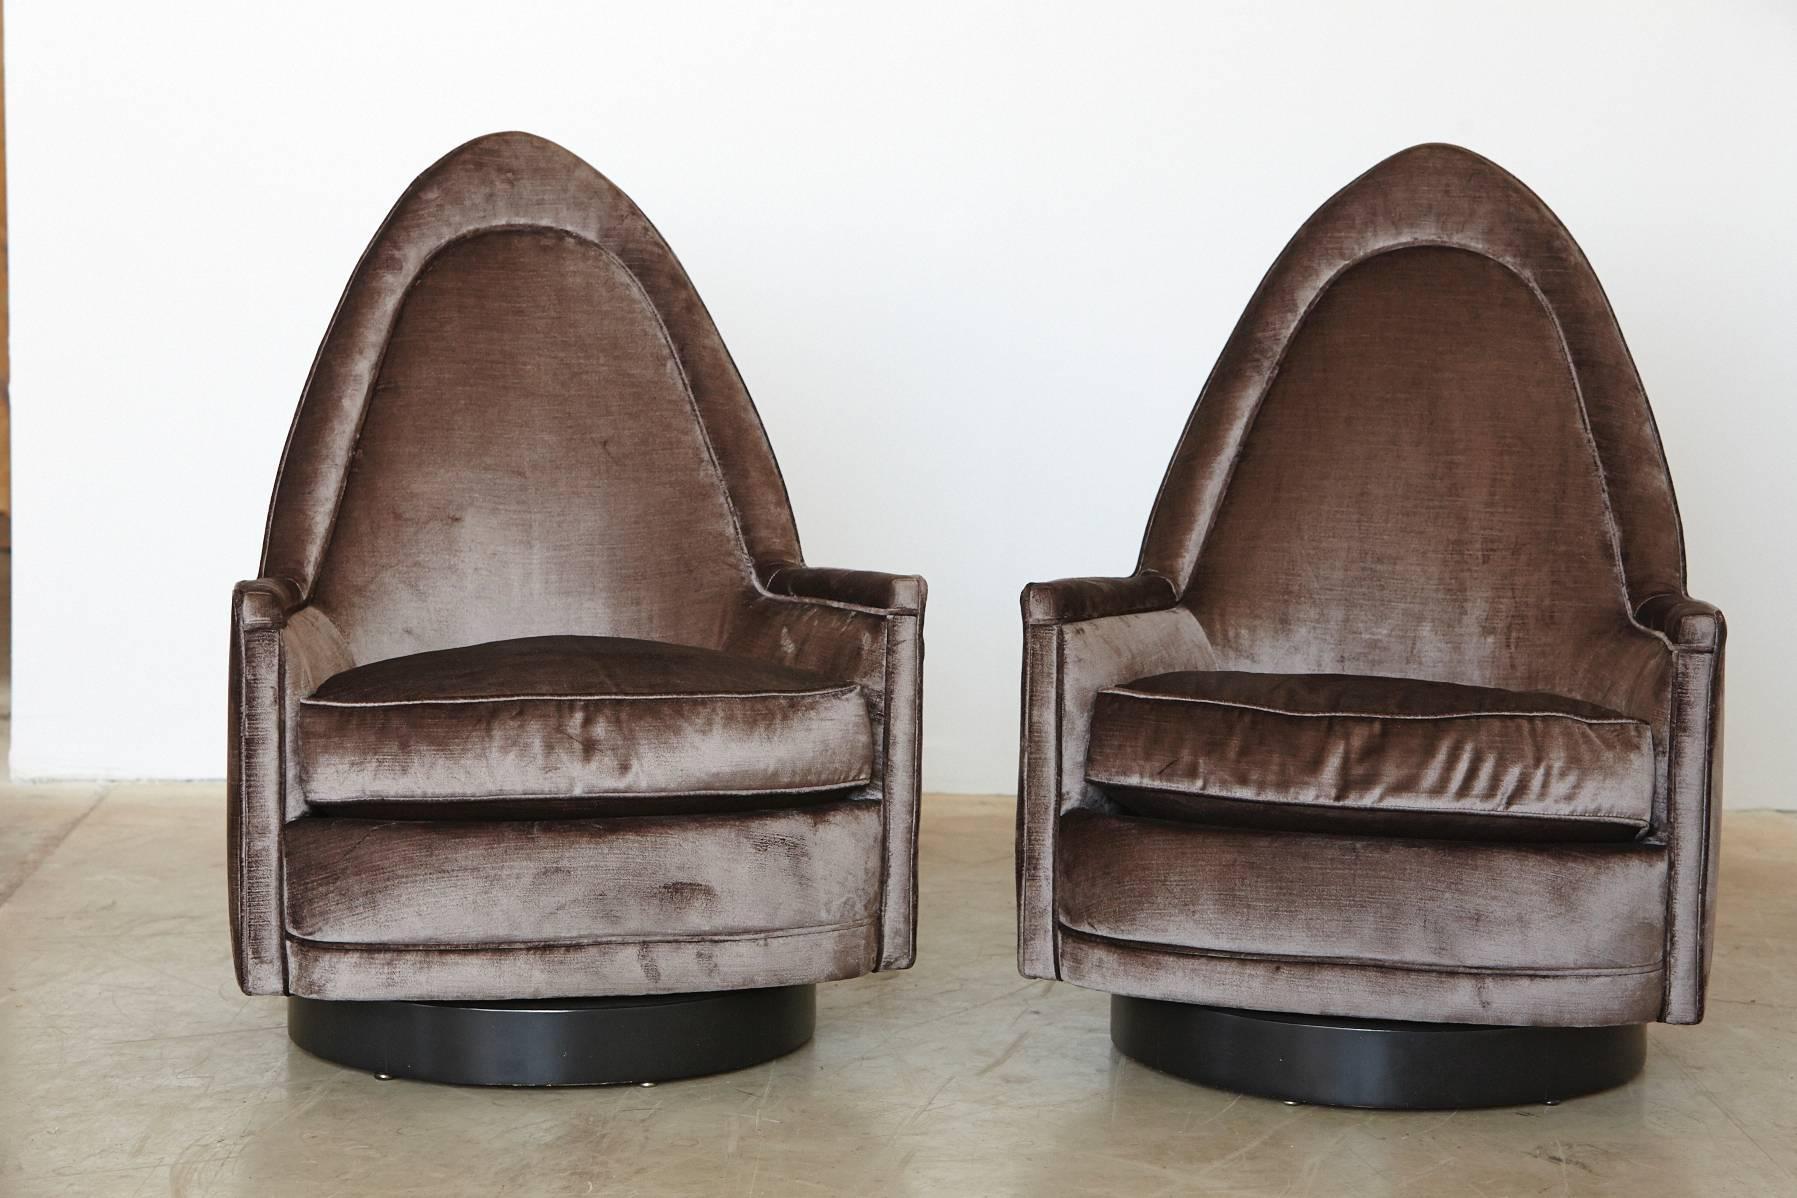 Fantastique paire de chaises pivotantes cathédrales sculpturales en velours gris sur une base en noyer noir, conçues par Selig.
Les chaises ont un pivot à mémoire, les chaises reviennent automatiquement dans une position centrée après s'être levées.